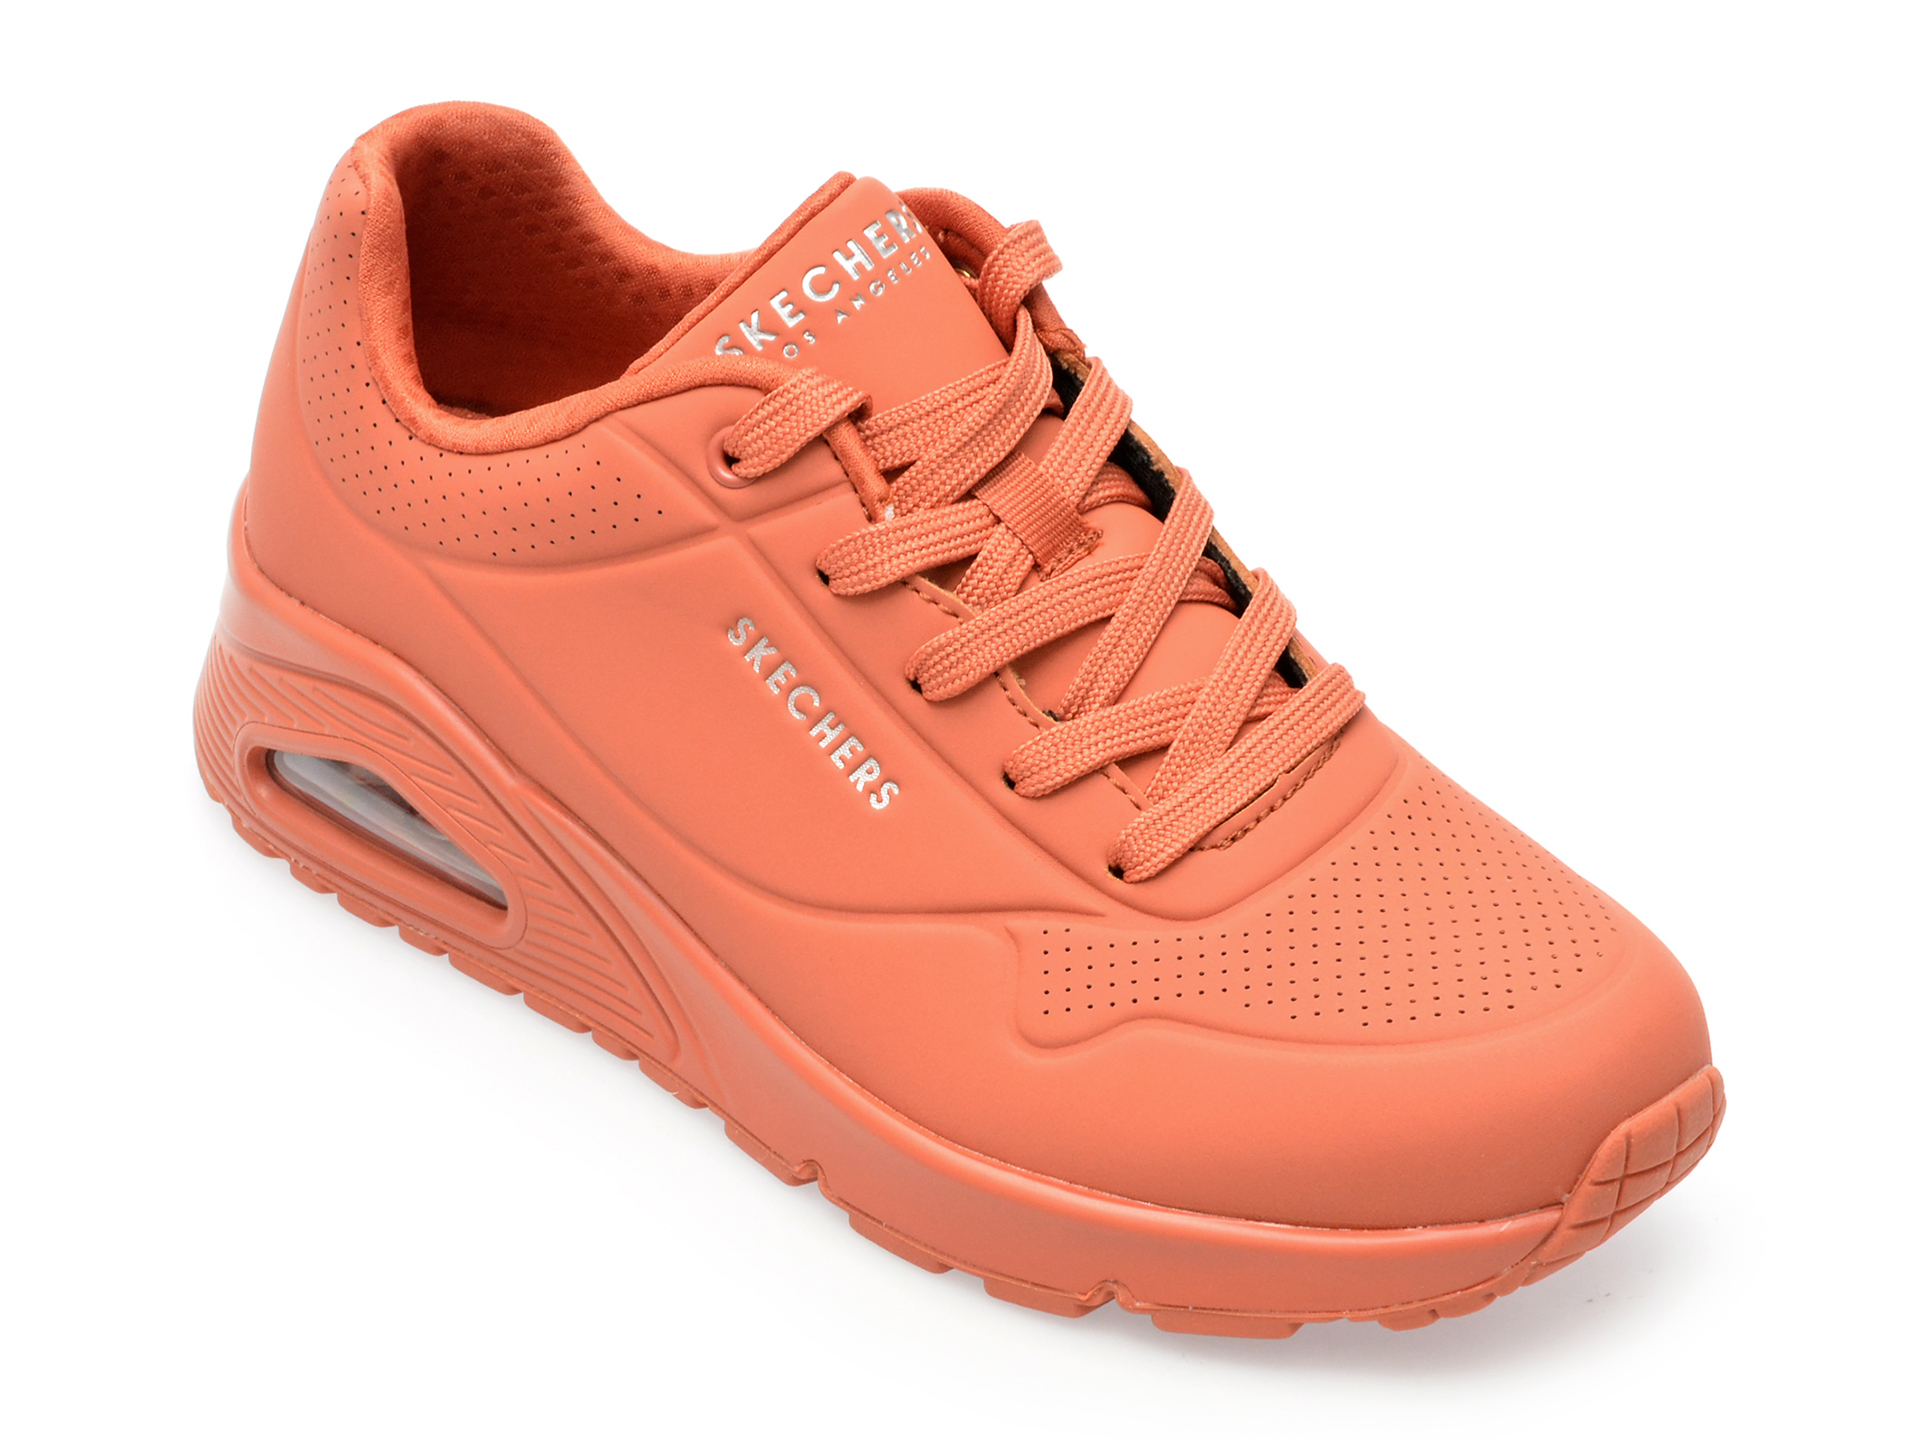 Pantofi SKECHERS portocalii, UNO, din piele ecologica femei 2023-09-21